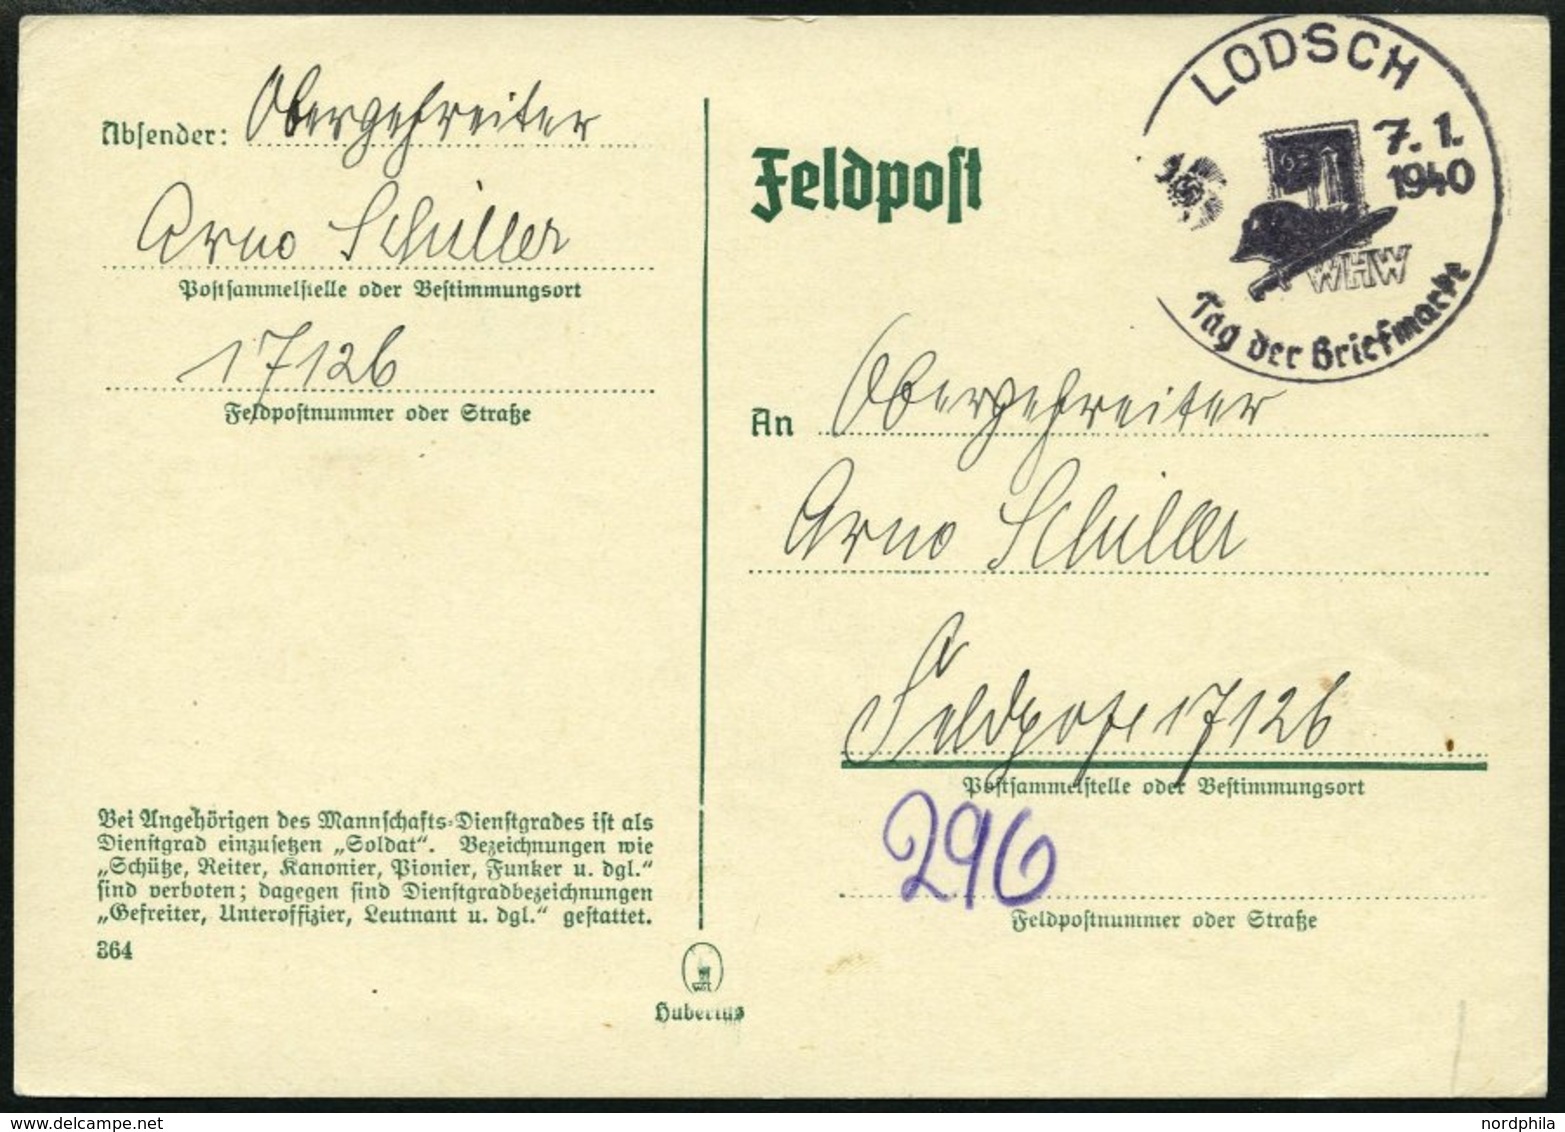 FELDPOST II. WK BELEGE 1940, Feldpost-Postkarte Mit Information über Die Richtige Dienstgradbezeichnung Bei Der Feldpost - Occupation 1938-45